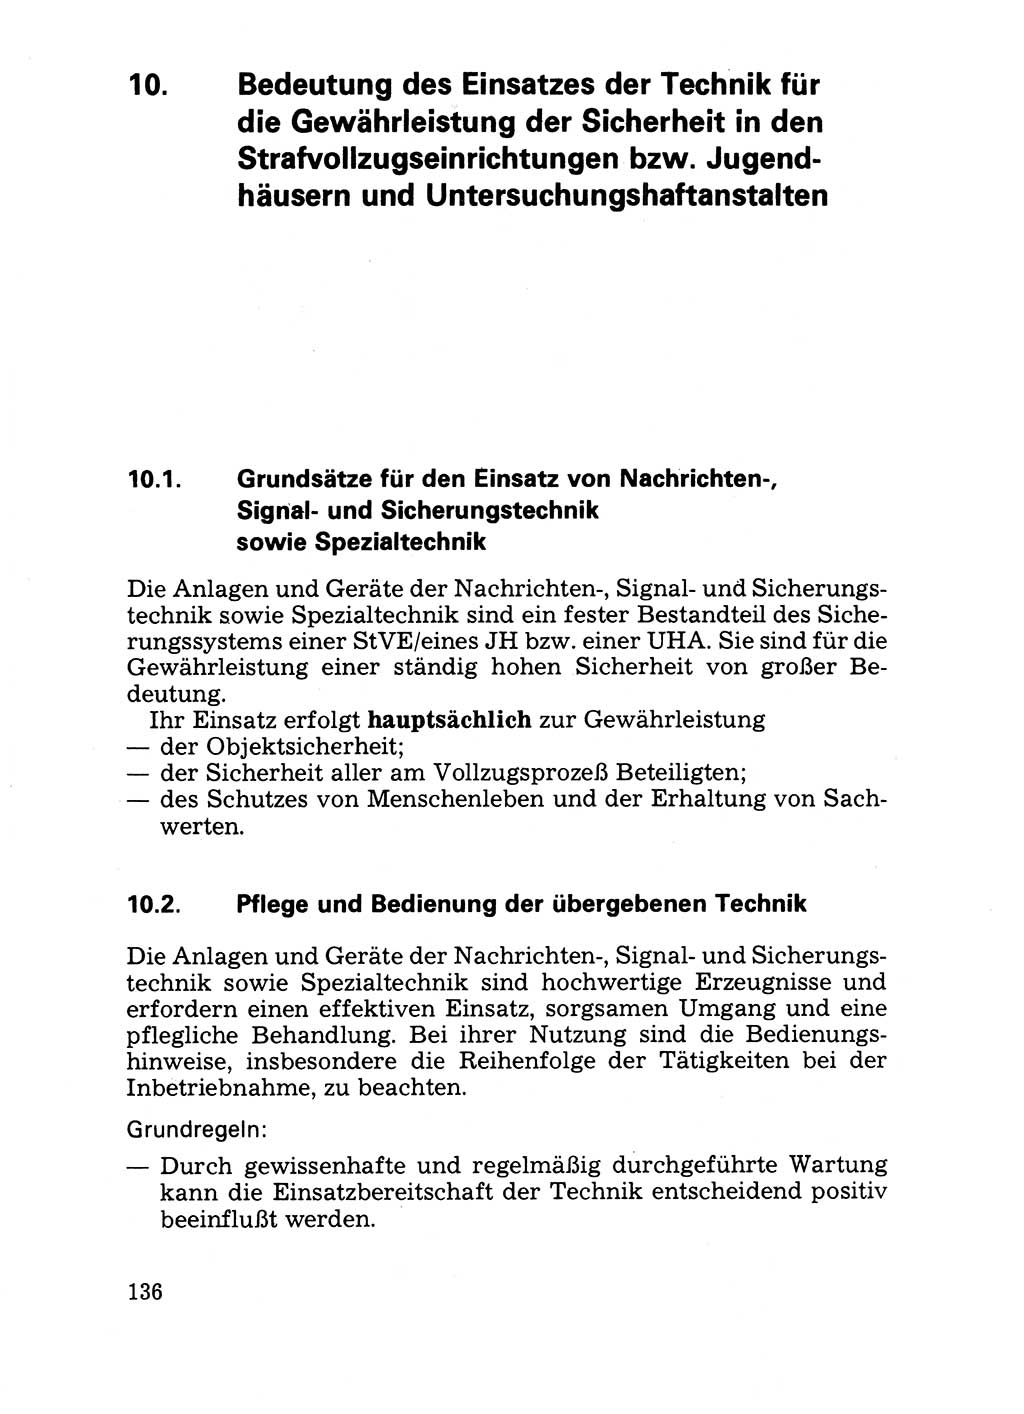 Handbuch für operative Dienste, Abteilung Strafvollzug (SV) [Ministerium des Innern (MdI) Deutsche Demokratische Republik (DDR)] 1981, Seite 136 (Hb. op. D. Abt. SV MdI DDR 1981, S. 136)